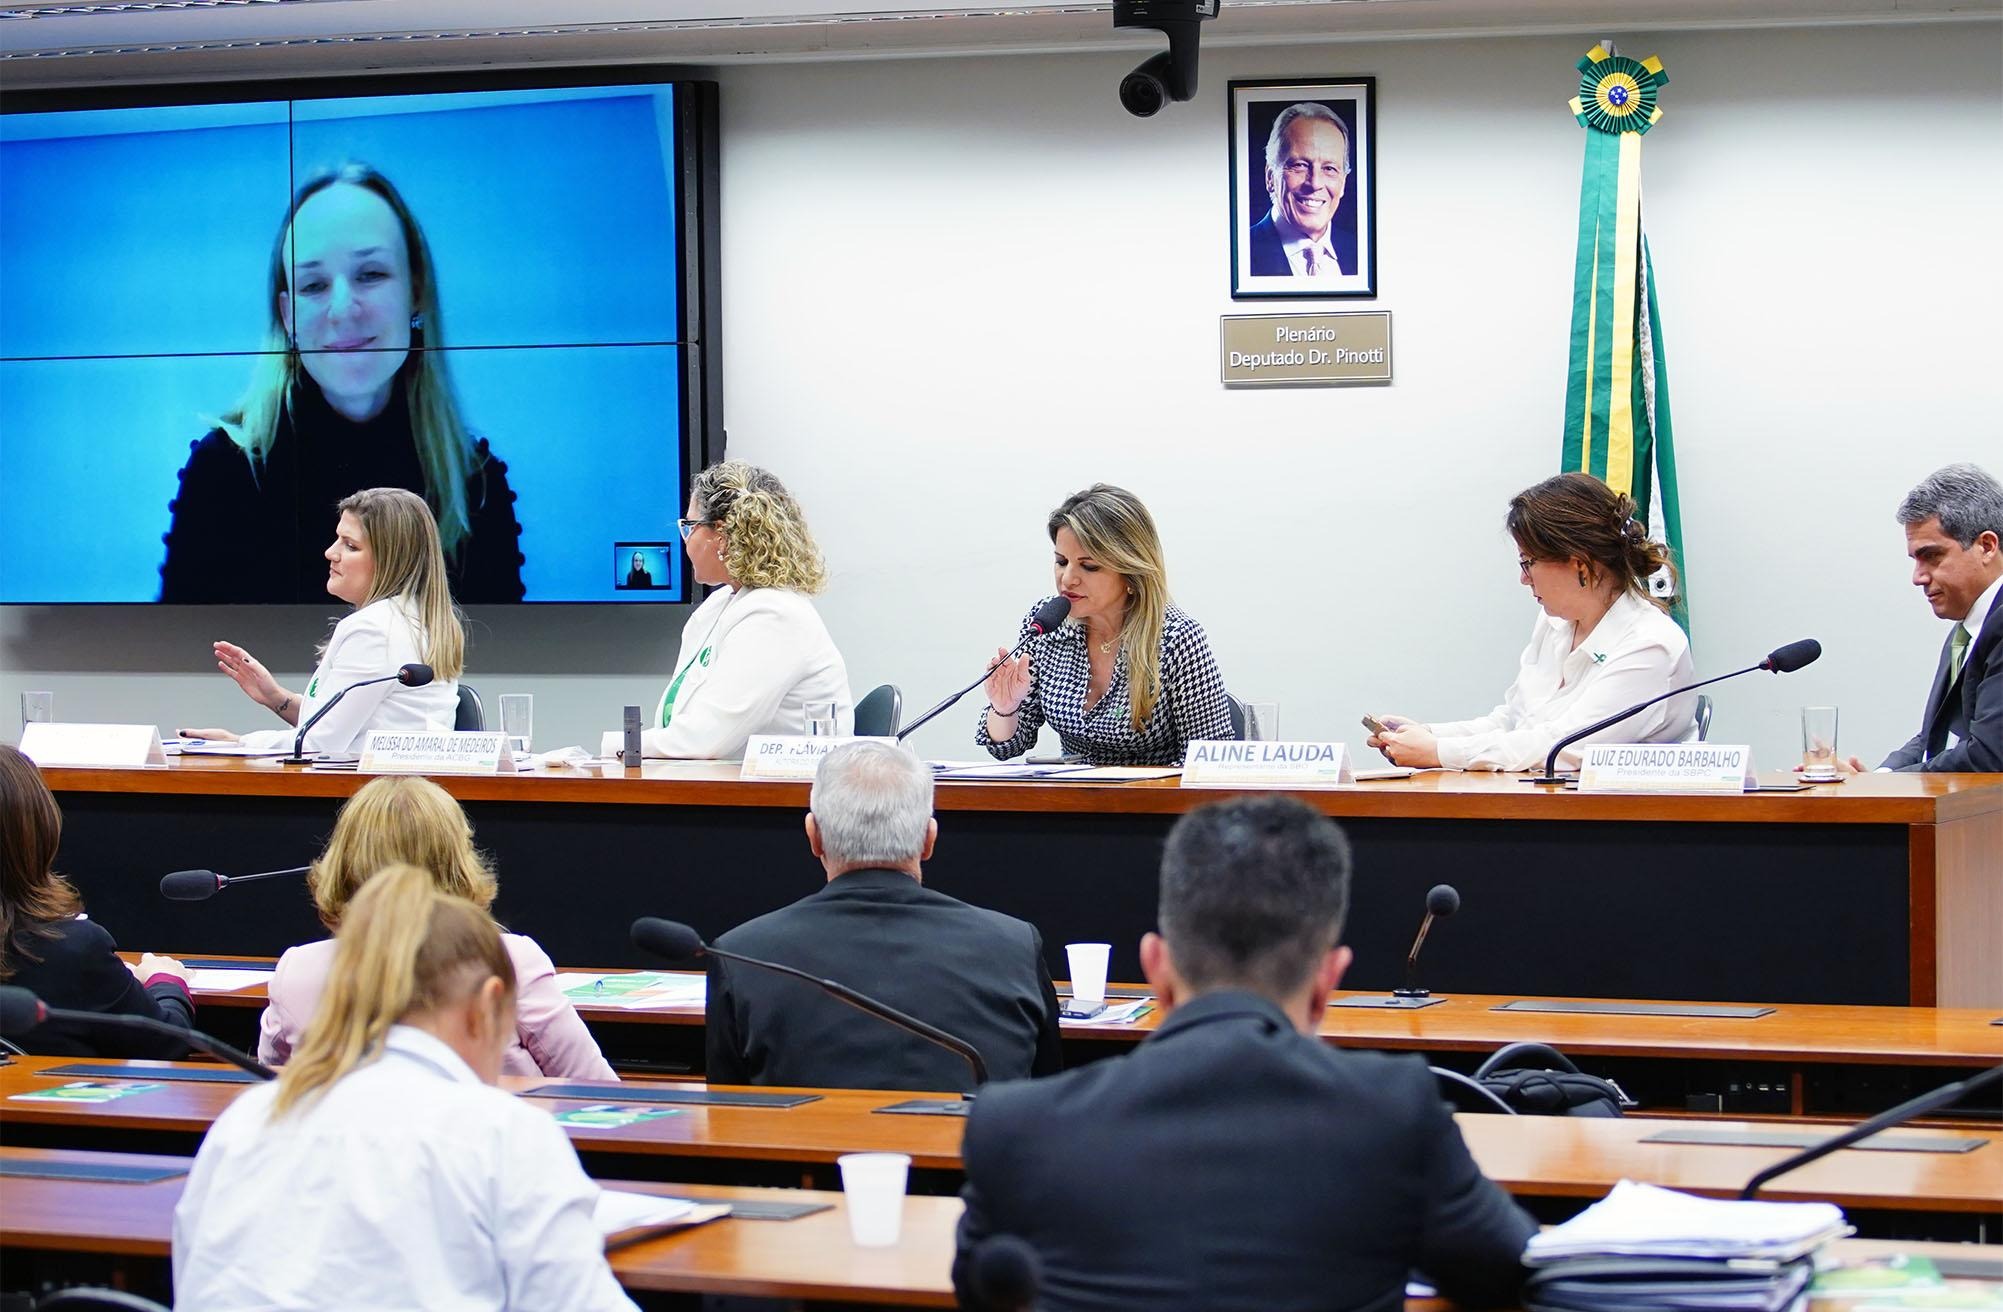 Will Shutter/Câmara dos Deputados / Audiência pública sobre a prevenção do câncer de cabeça e pescoço no paísComissão debate prevenção ao câncer de cabeça e pescoço, que atinge 40 mil pessoas por ano no Brasil